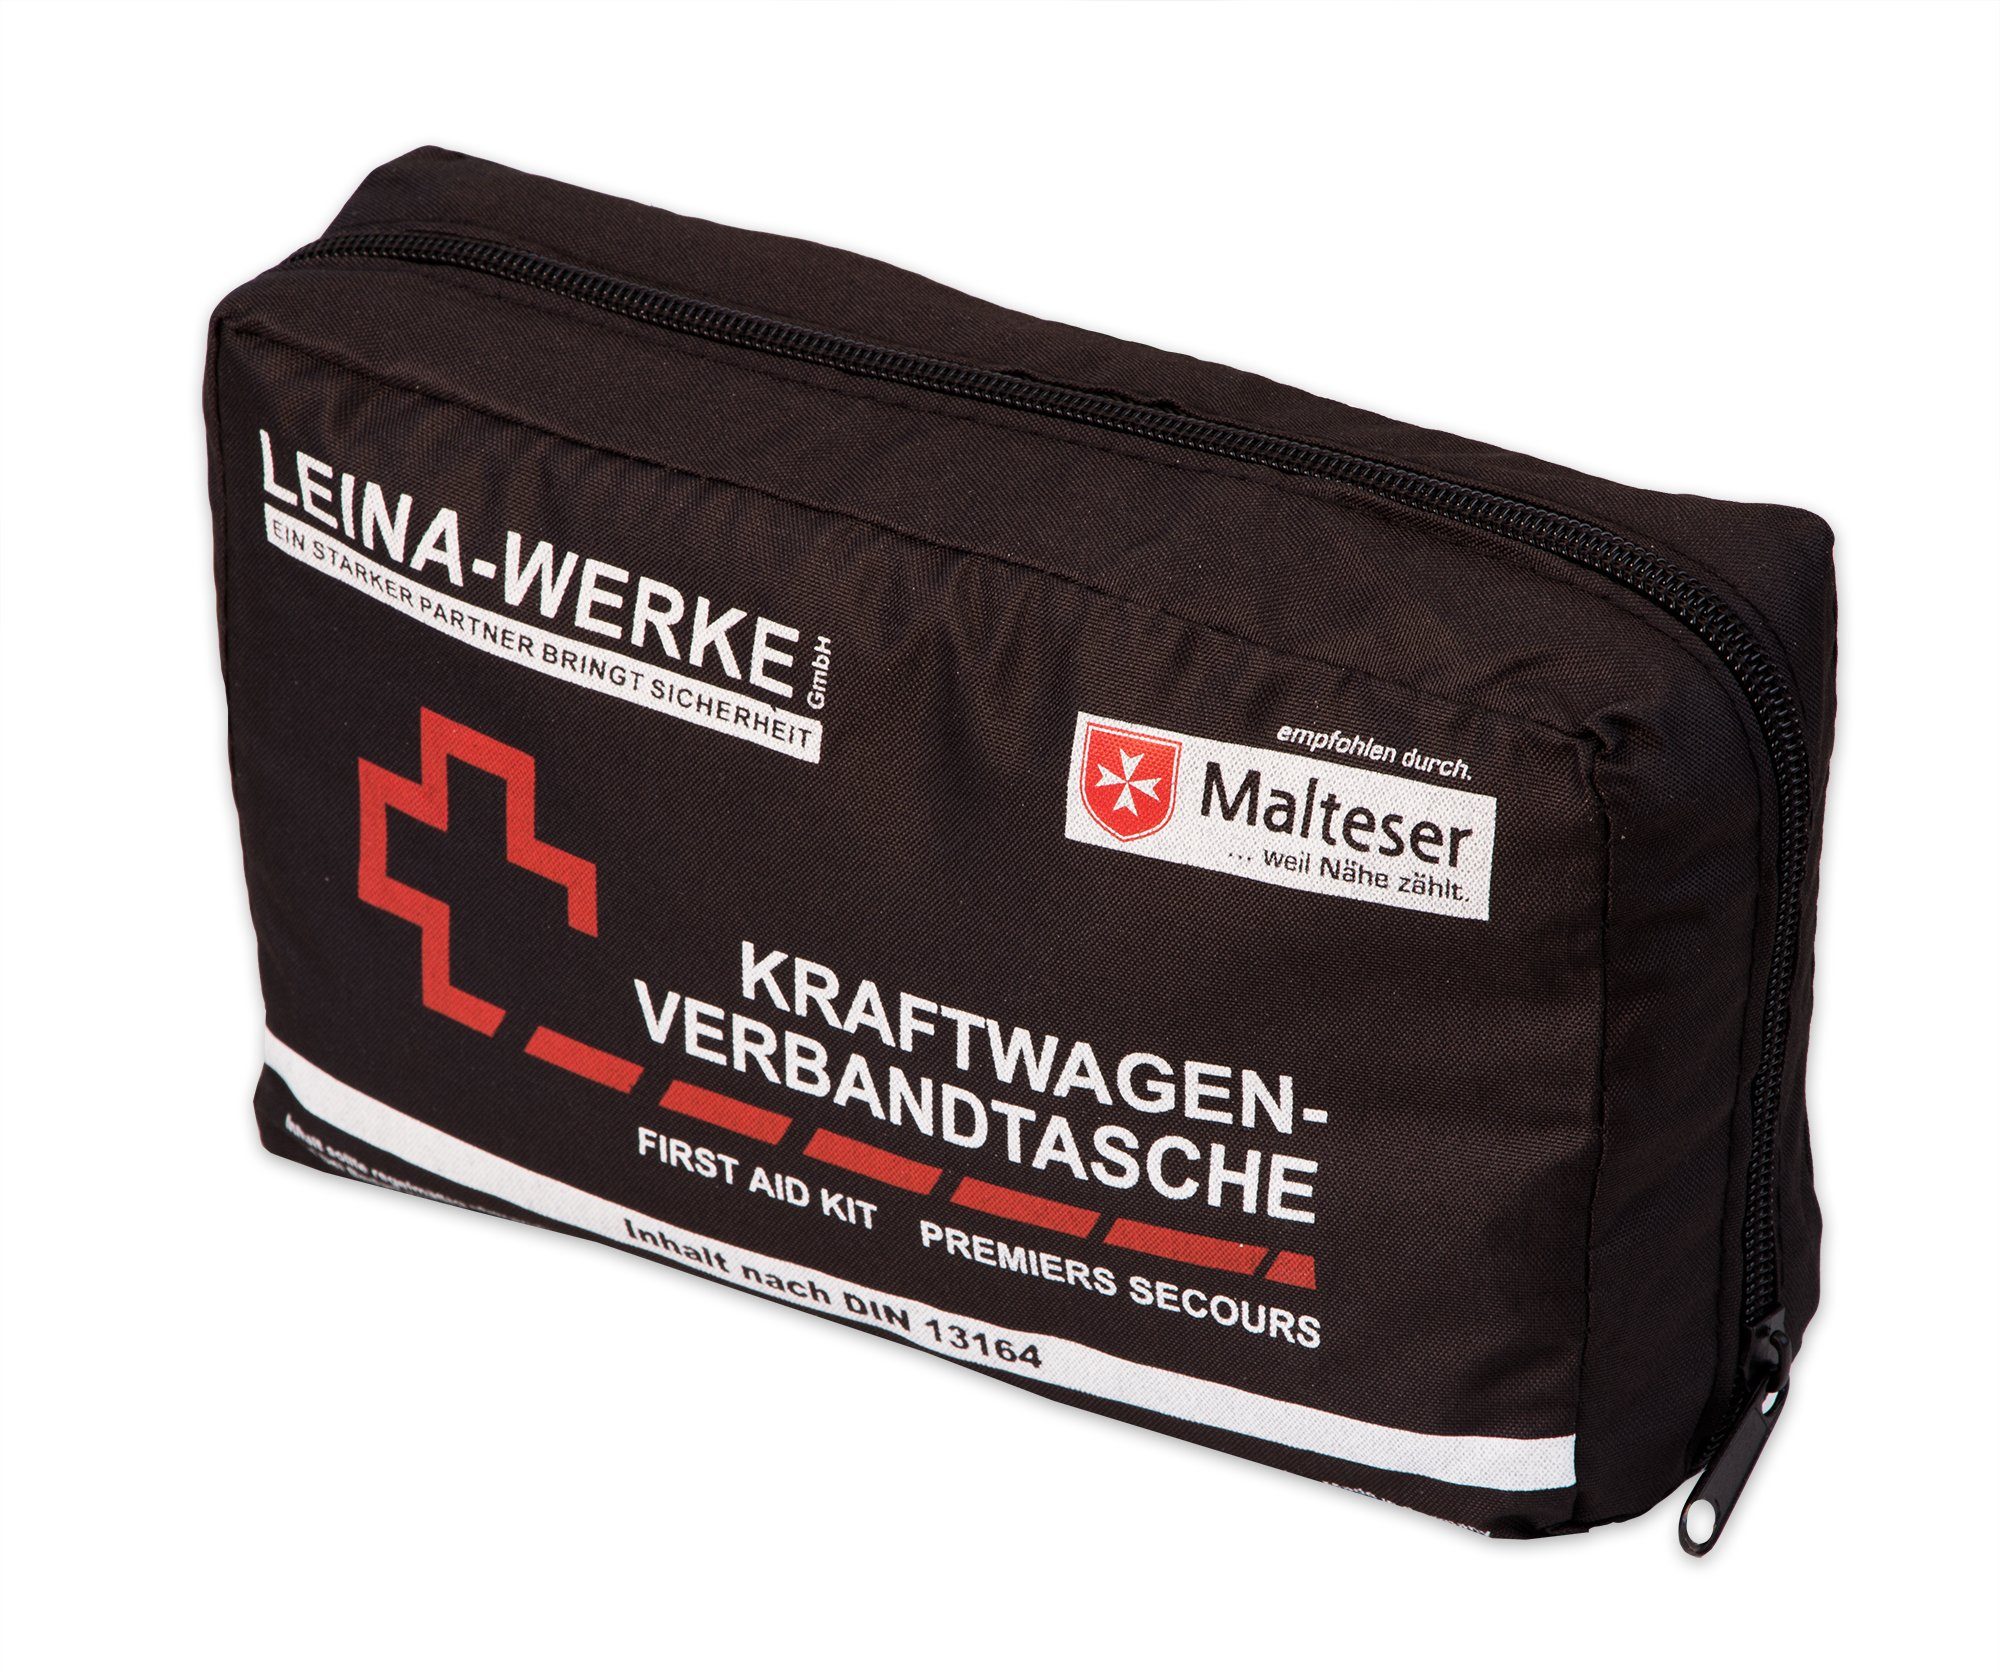 FIRST AID ONLY KFZ-Verbandtasche nach DIN 13164, schwarz, 1 Stück, 10,99 €